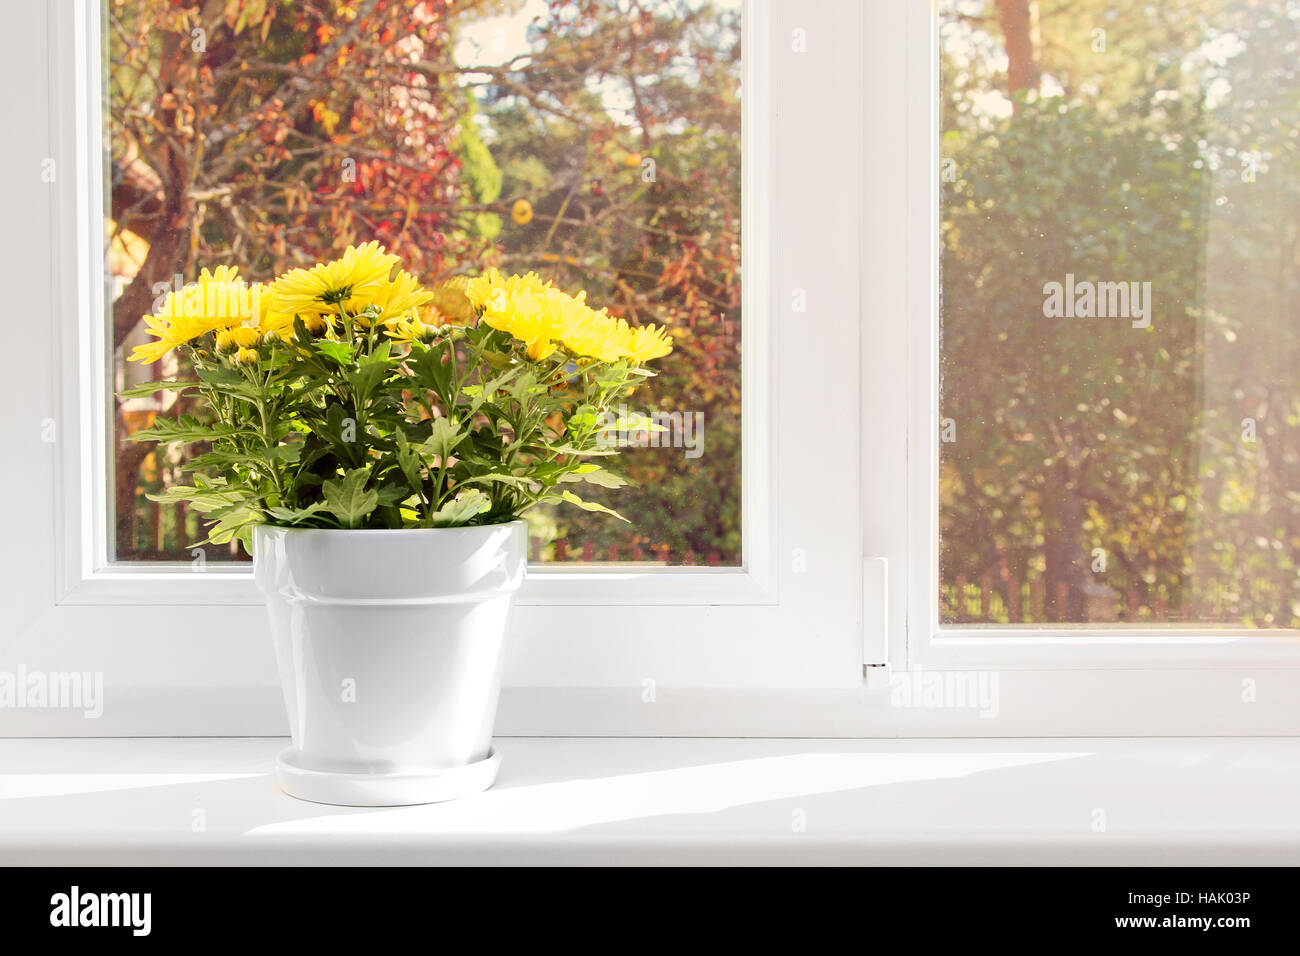 Avec pot de chrysanthème jaune sur l'appui de fenêtre Banque D'Images